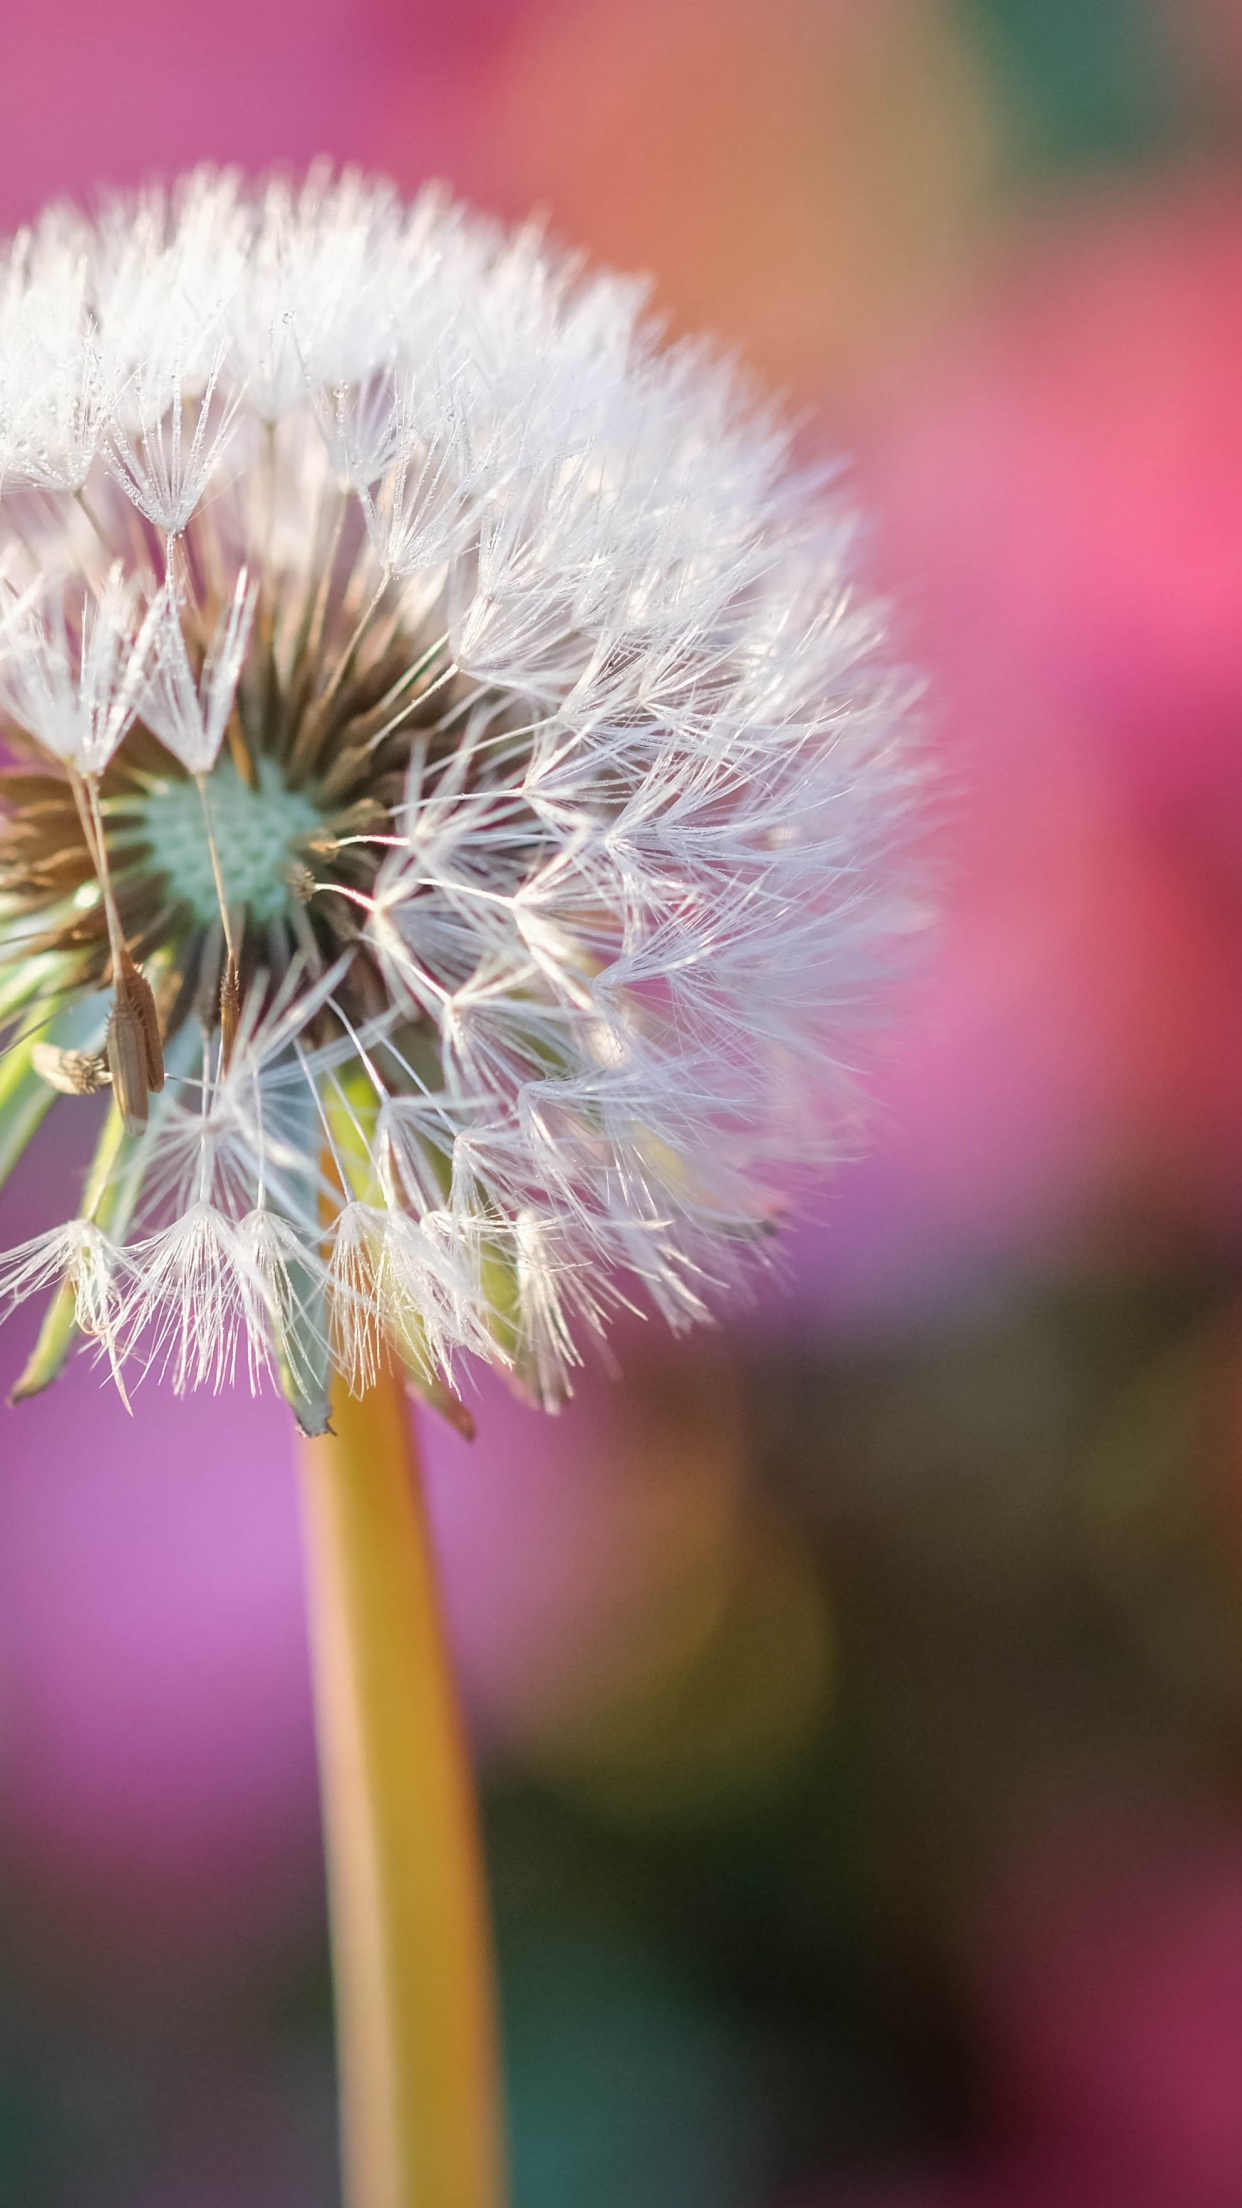 Dandelion là loại hoa mang ý nghĩa về sự tự do, kết nối và hi vọng. Hãy xem ảnh về những bông hoa này để cảm nhận rõ hơn về ý nghĩa đó. Với những tuyệt tác của nhiếp ảnh gia, bạn sẽ bị choáng ngợp bởi sự đẹp và sự tinh tế trong cách mà từng bông hoa được chụp lại. 